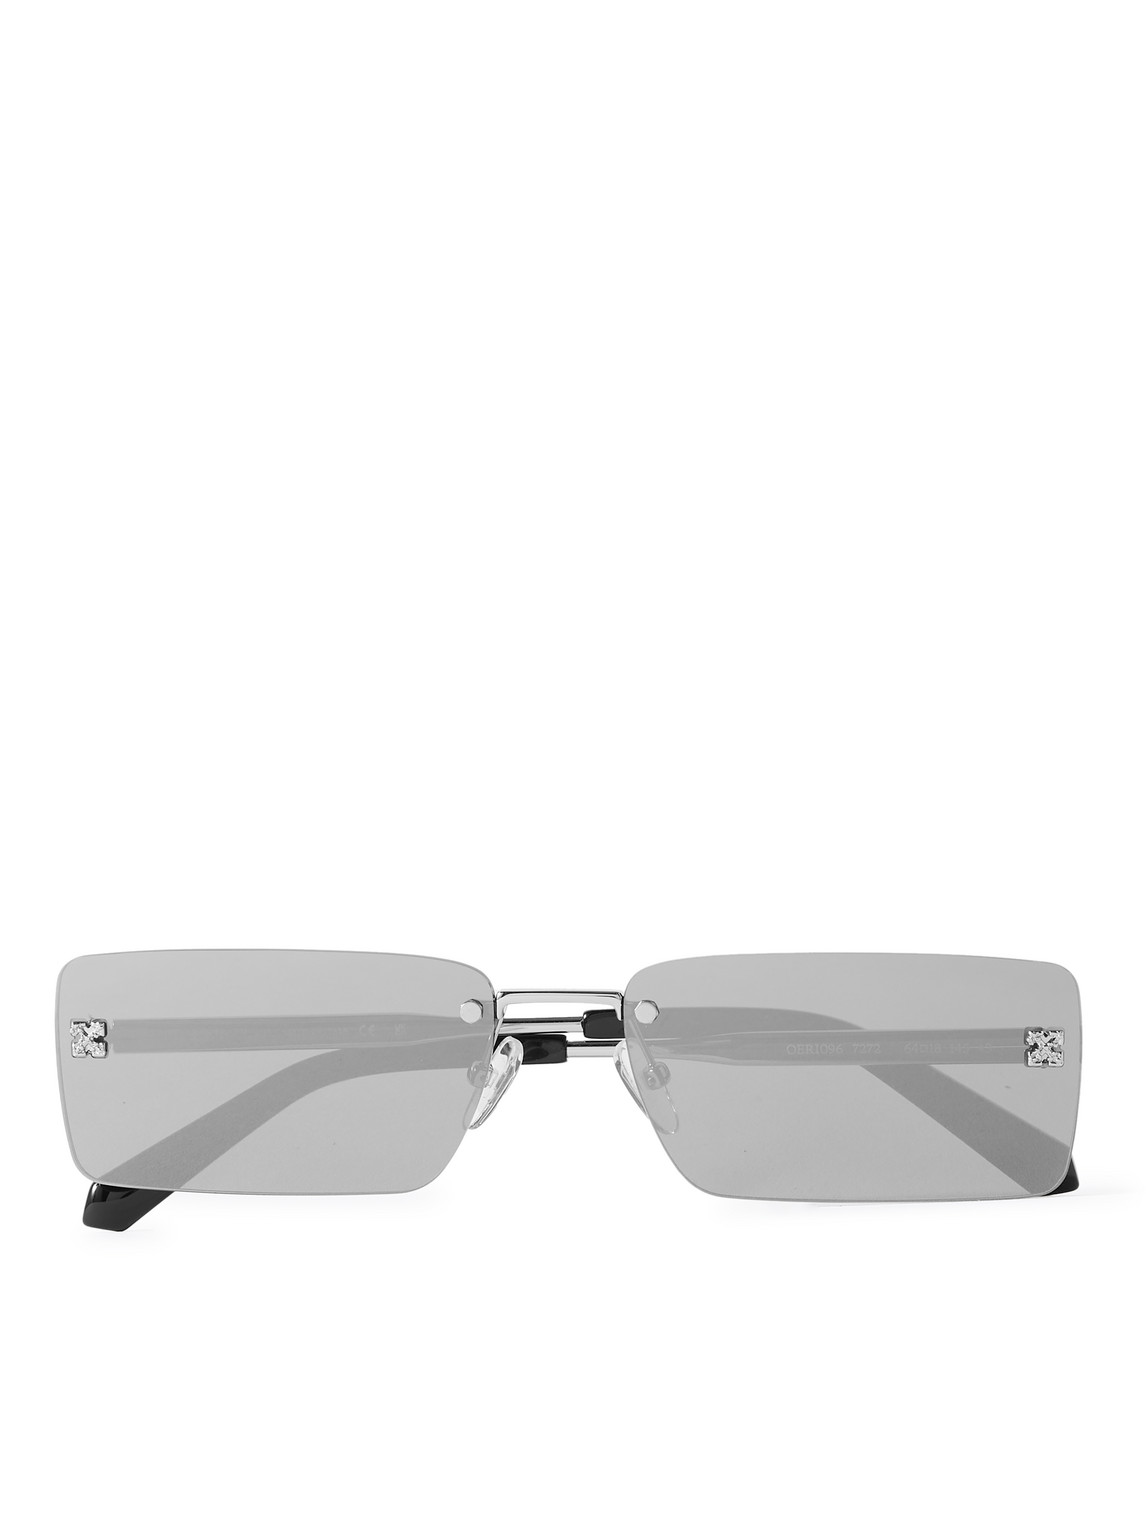 Off-White - Riccione Rectangle-Frame Silver-Tone Sunglasses - Men - Silver von Off-White